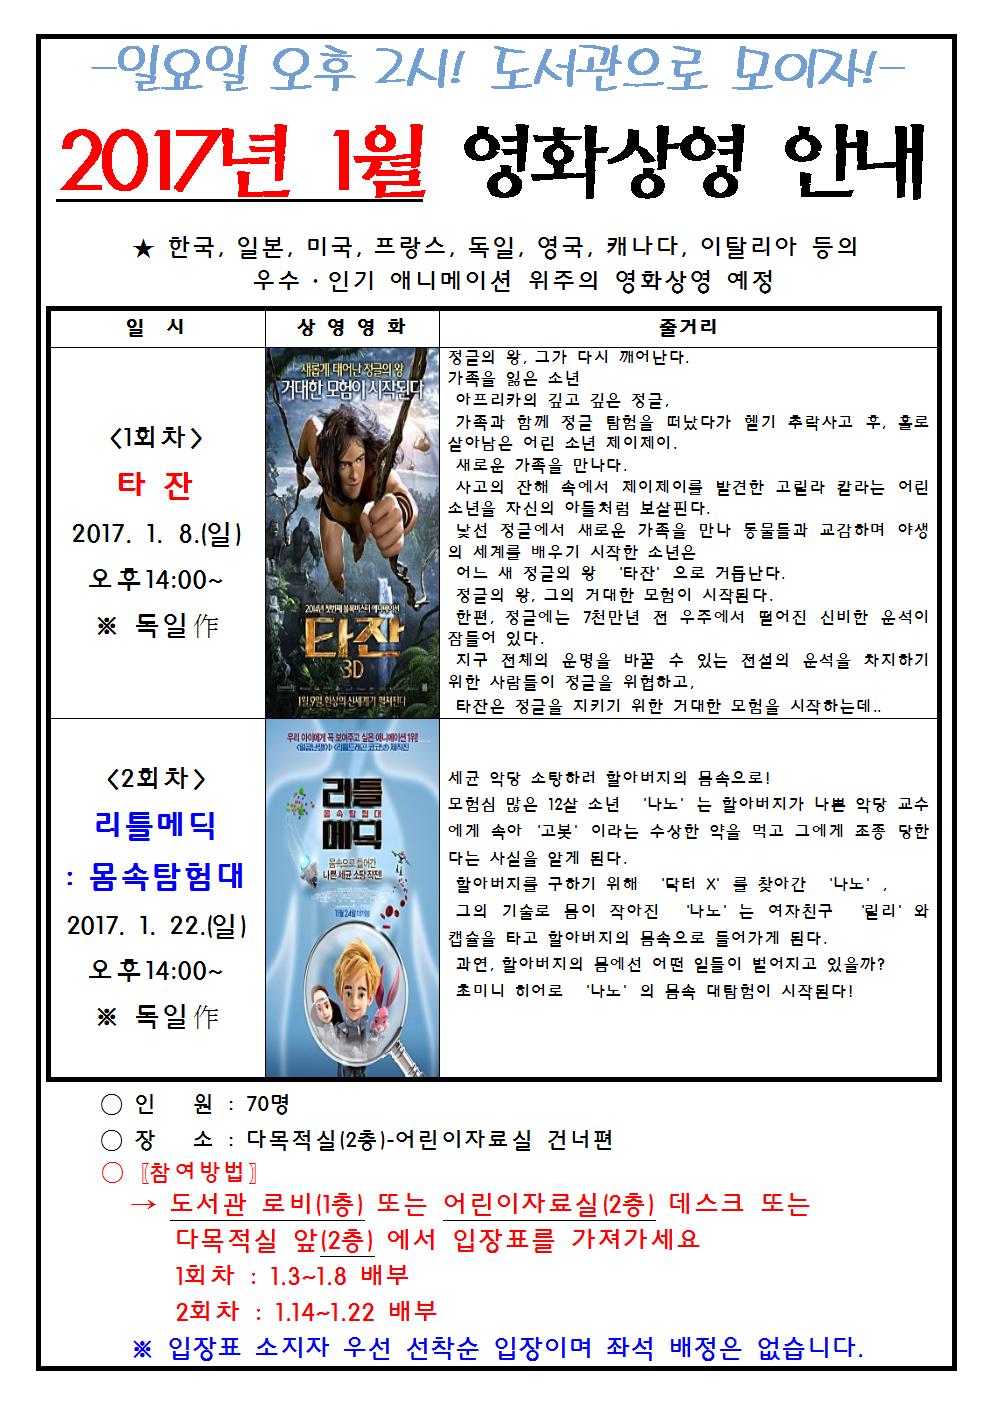 2017년 1월 청주오창도서관 영화상영 안내